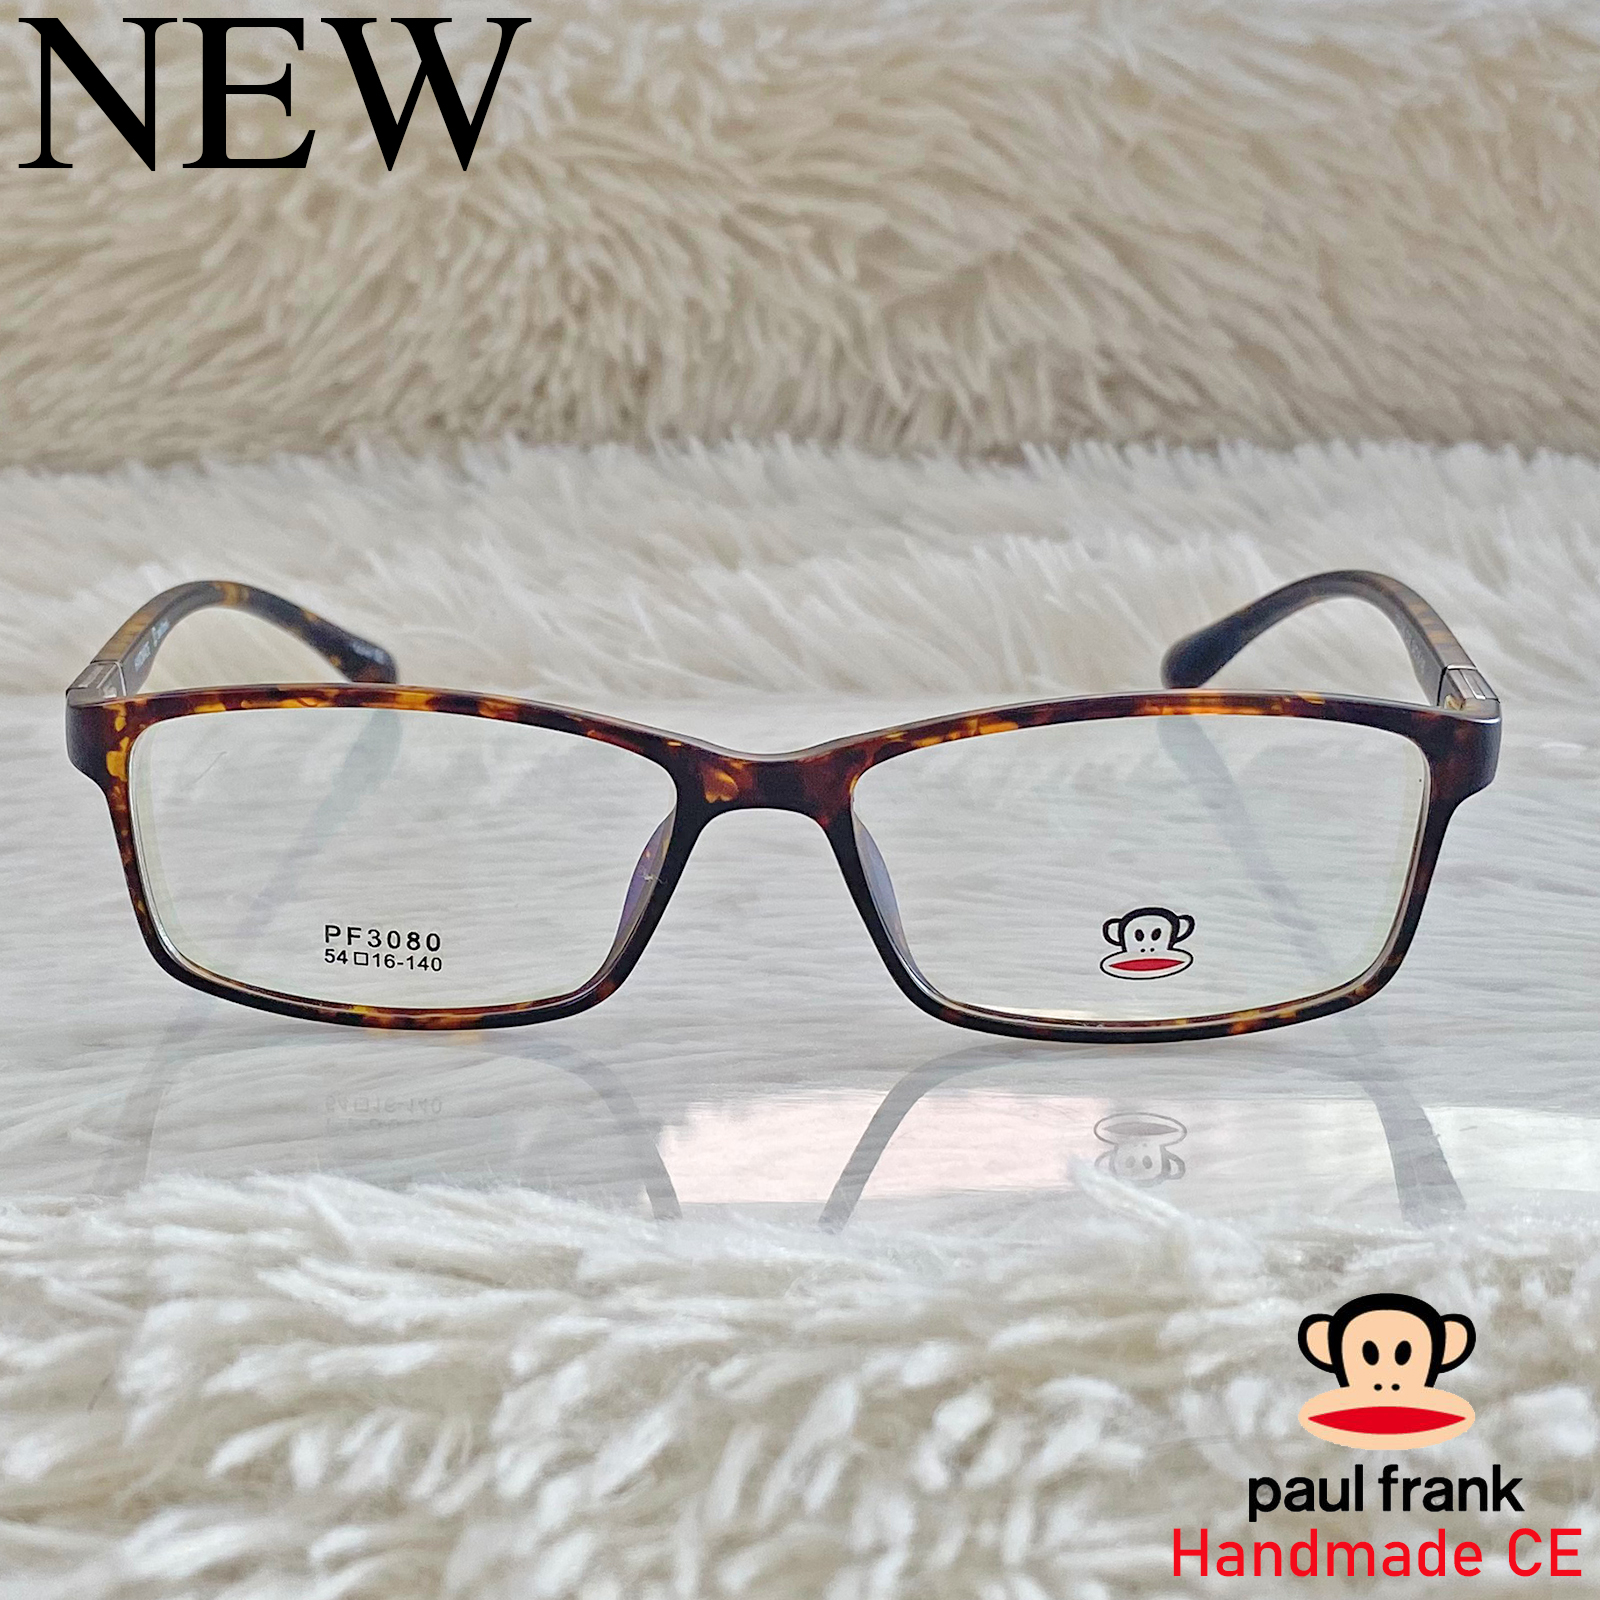 Handmade แว่นตาสำหรับตัดเลนส์ สายตา กรอบแว่นตา ชาย หญิง Fashion รุ่น 3080 สีน้ำตาลกละ กรอบเต็ม ทรงรี ขาข้อต่อ วัสดุ TR 90 รับตัดเลนส์ทุกชนิด